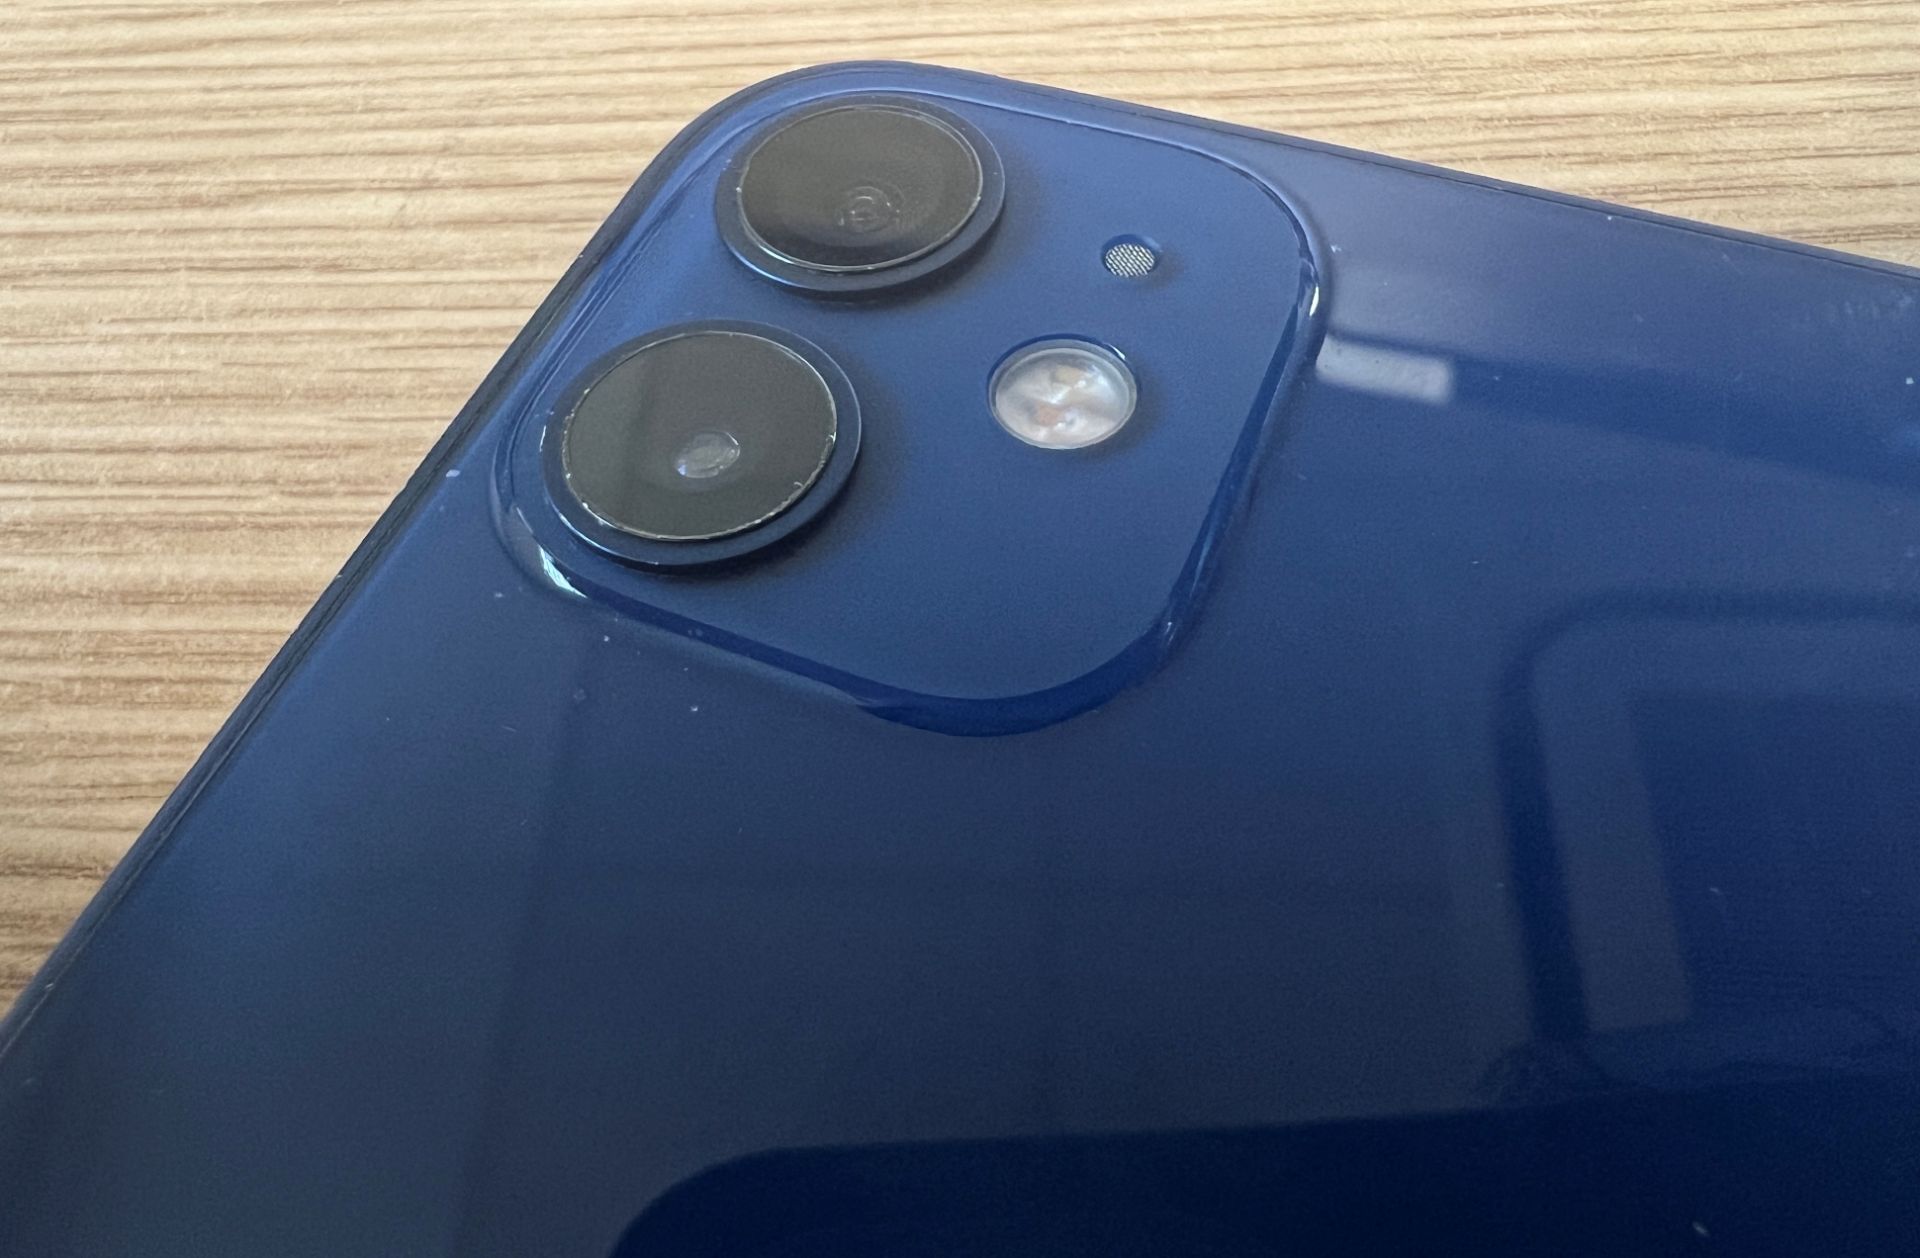 Apple iPhone 12 mini - 64GB - Blue - Unlocked - Image 5 of 6